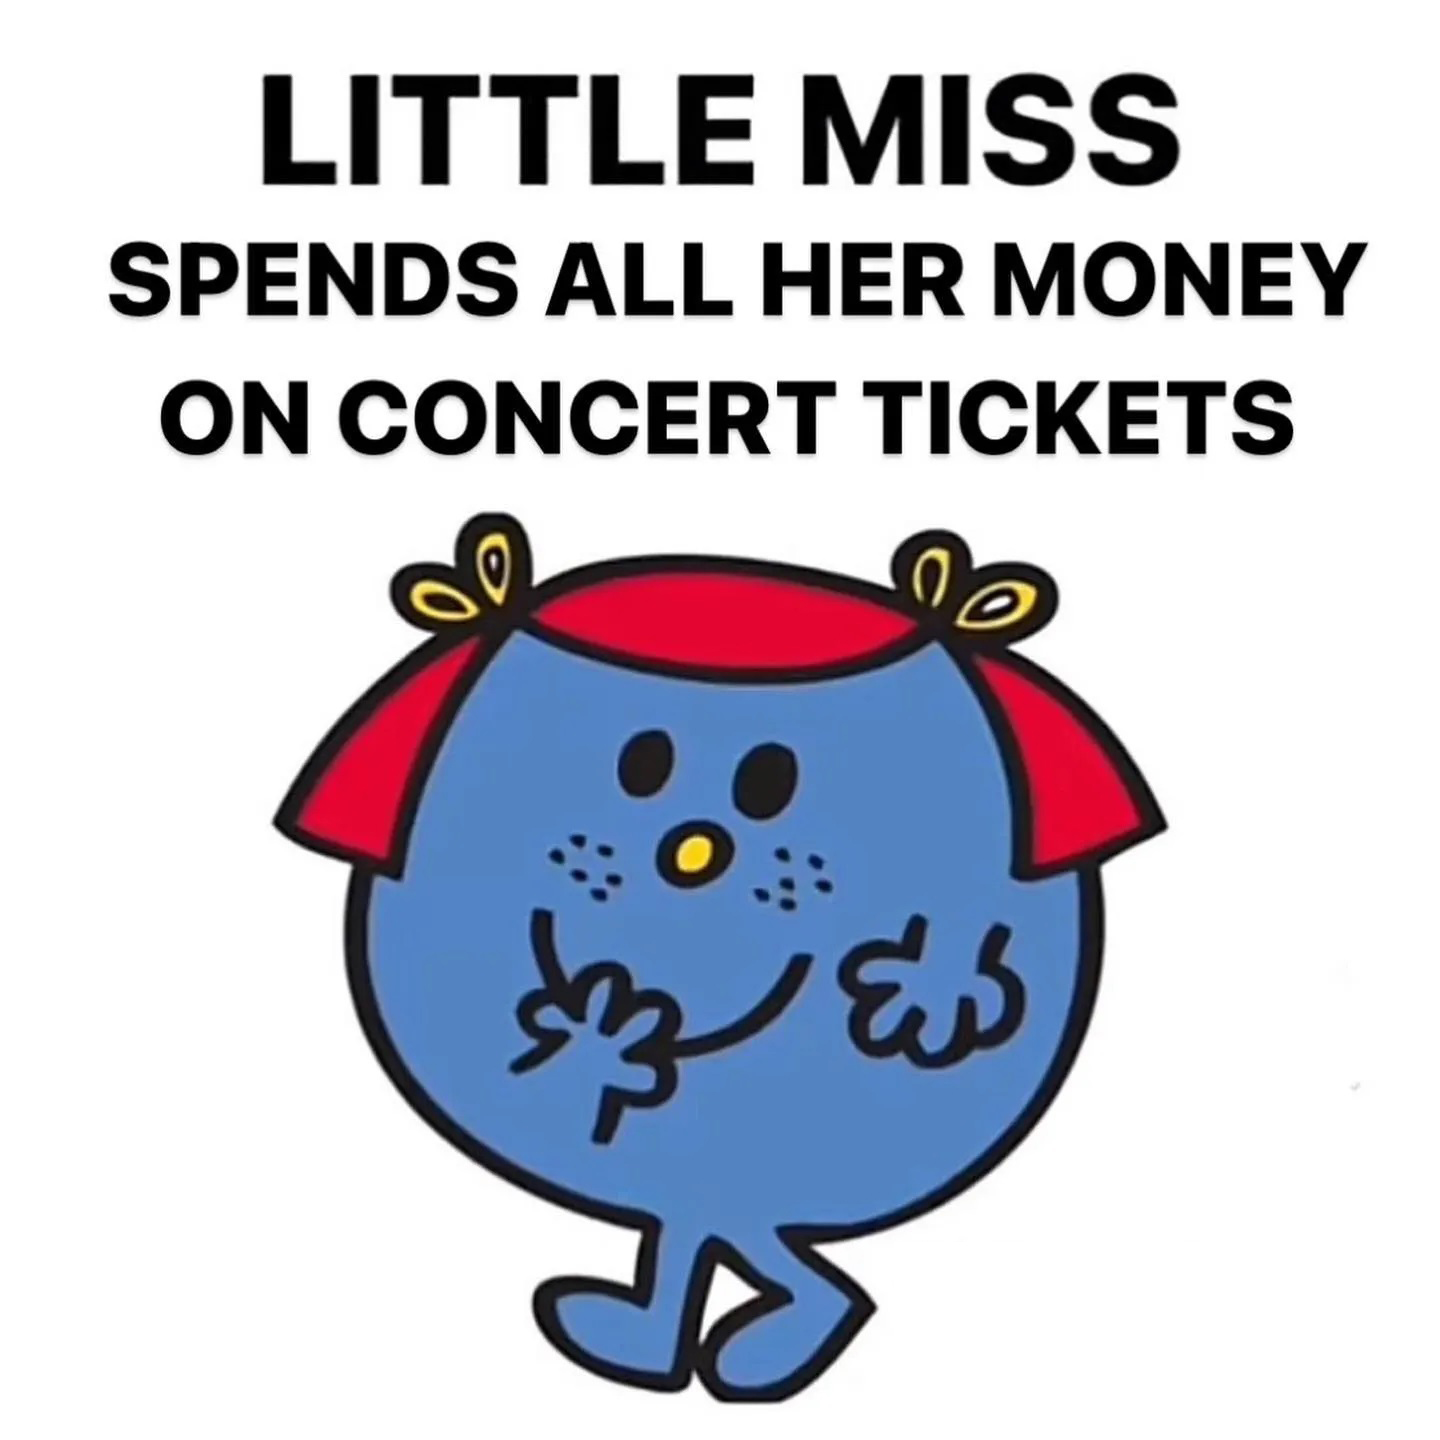 Little Miss Meme - IdleMeme